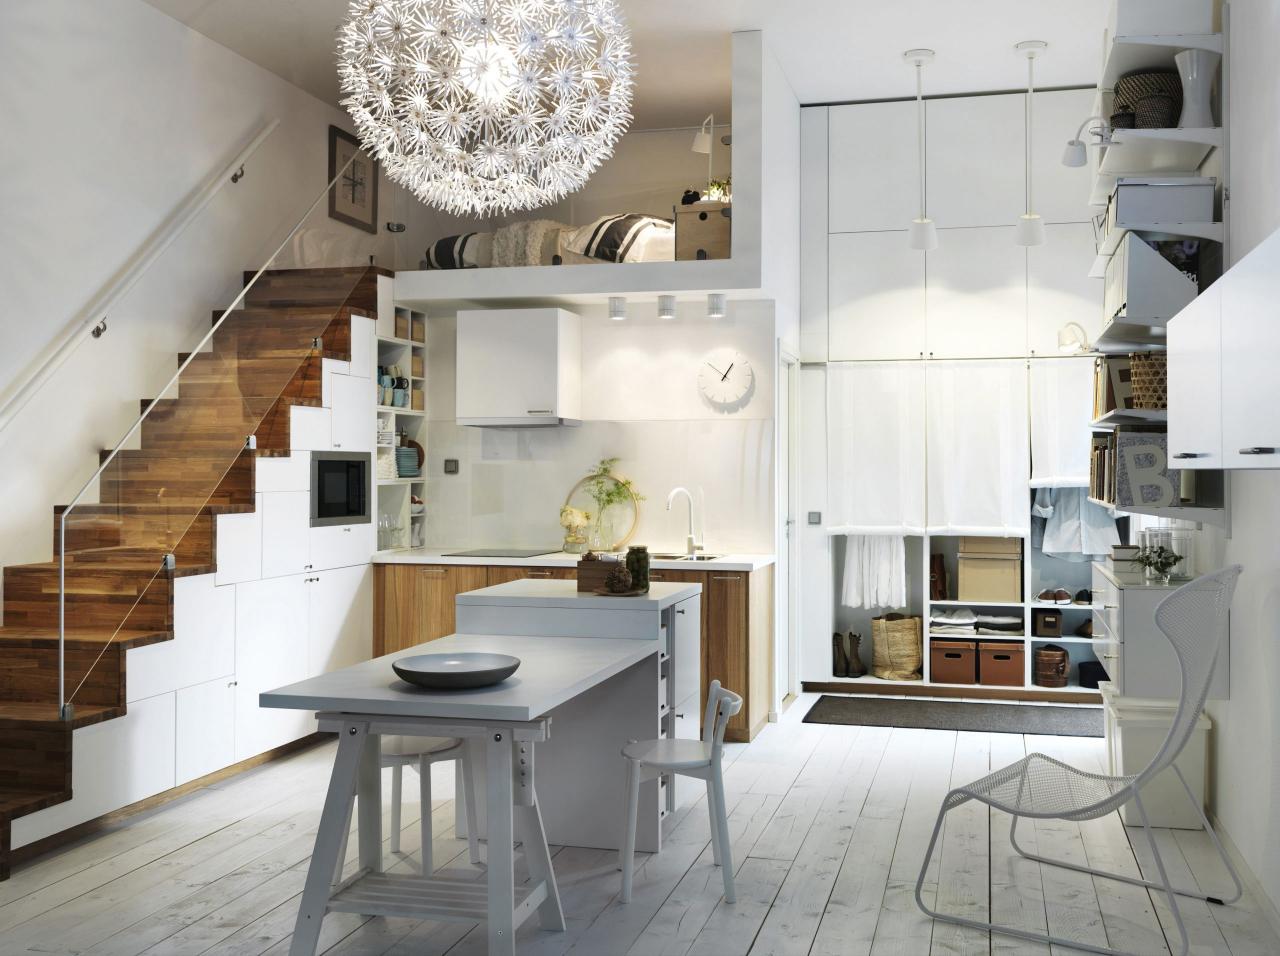 Căn bếp hiện đại tiện nghi được tích hợp hiệu quả với không gian gầm cầu thang.